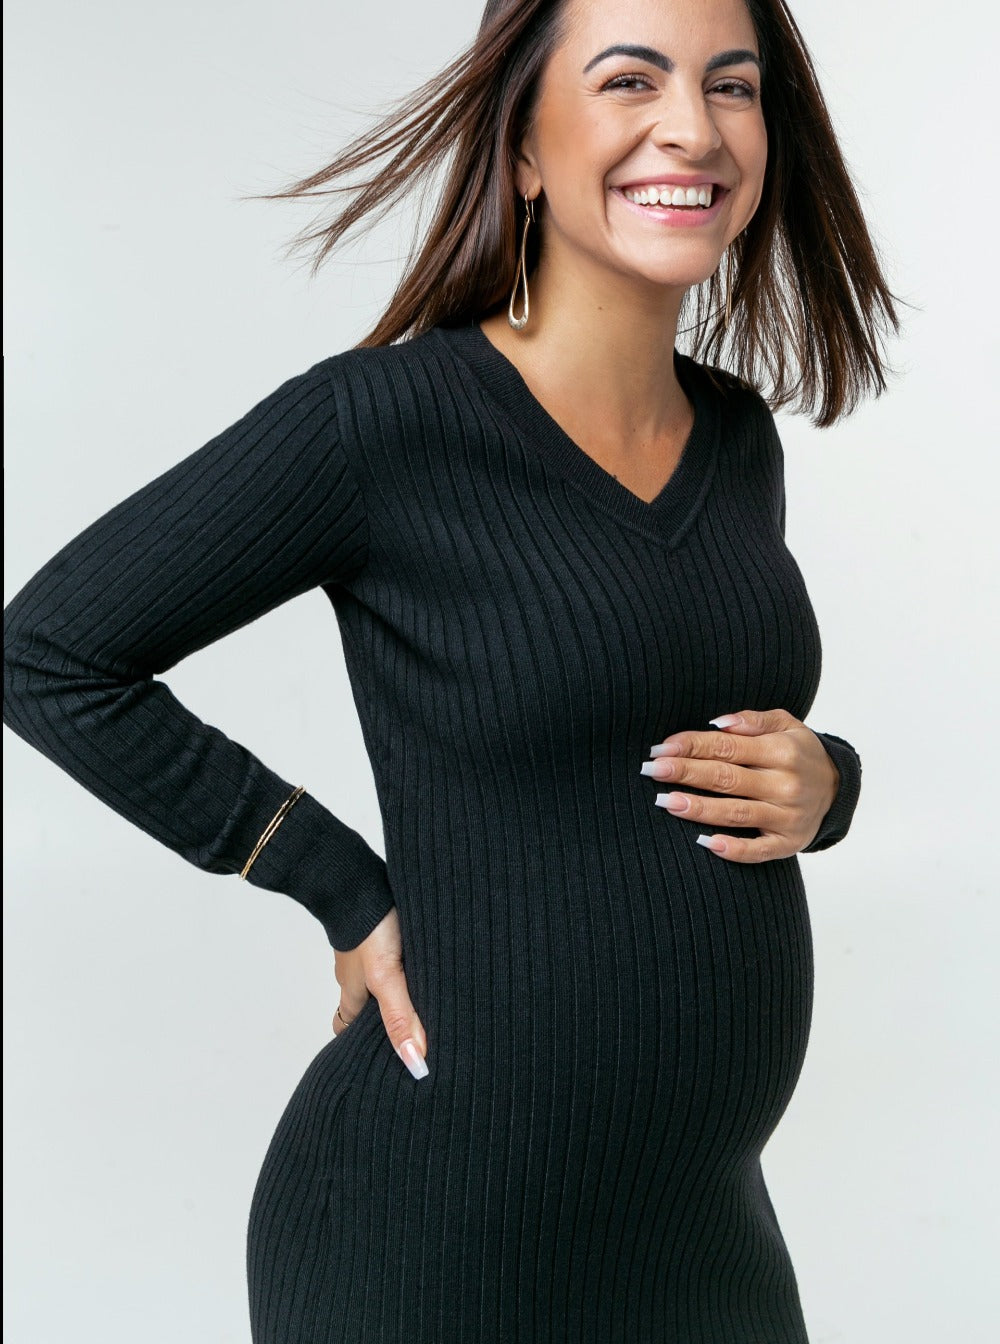 Premium Quality Designer Maternity & Nursing Clothes – MARION Maternity